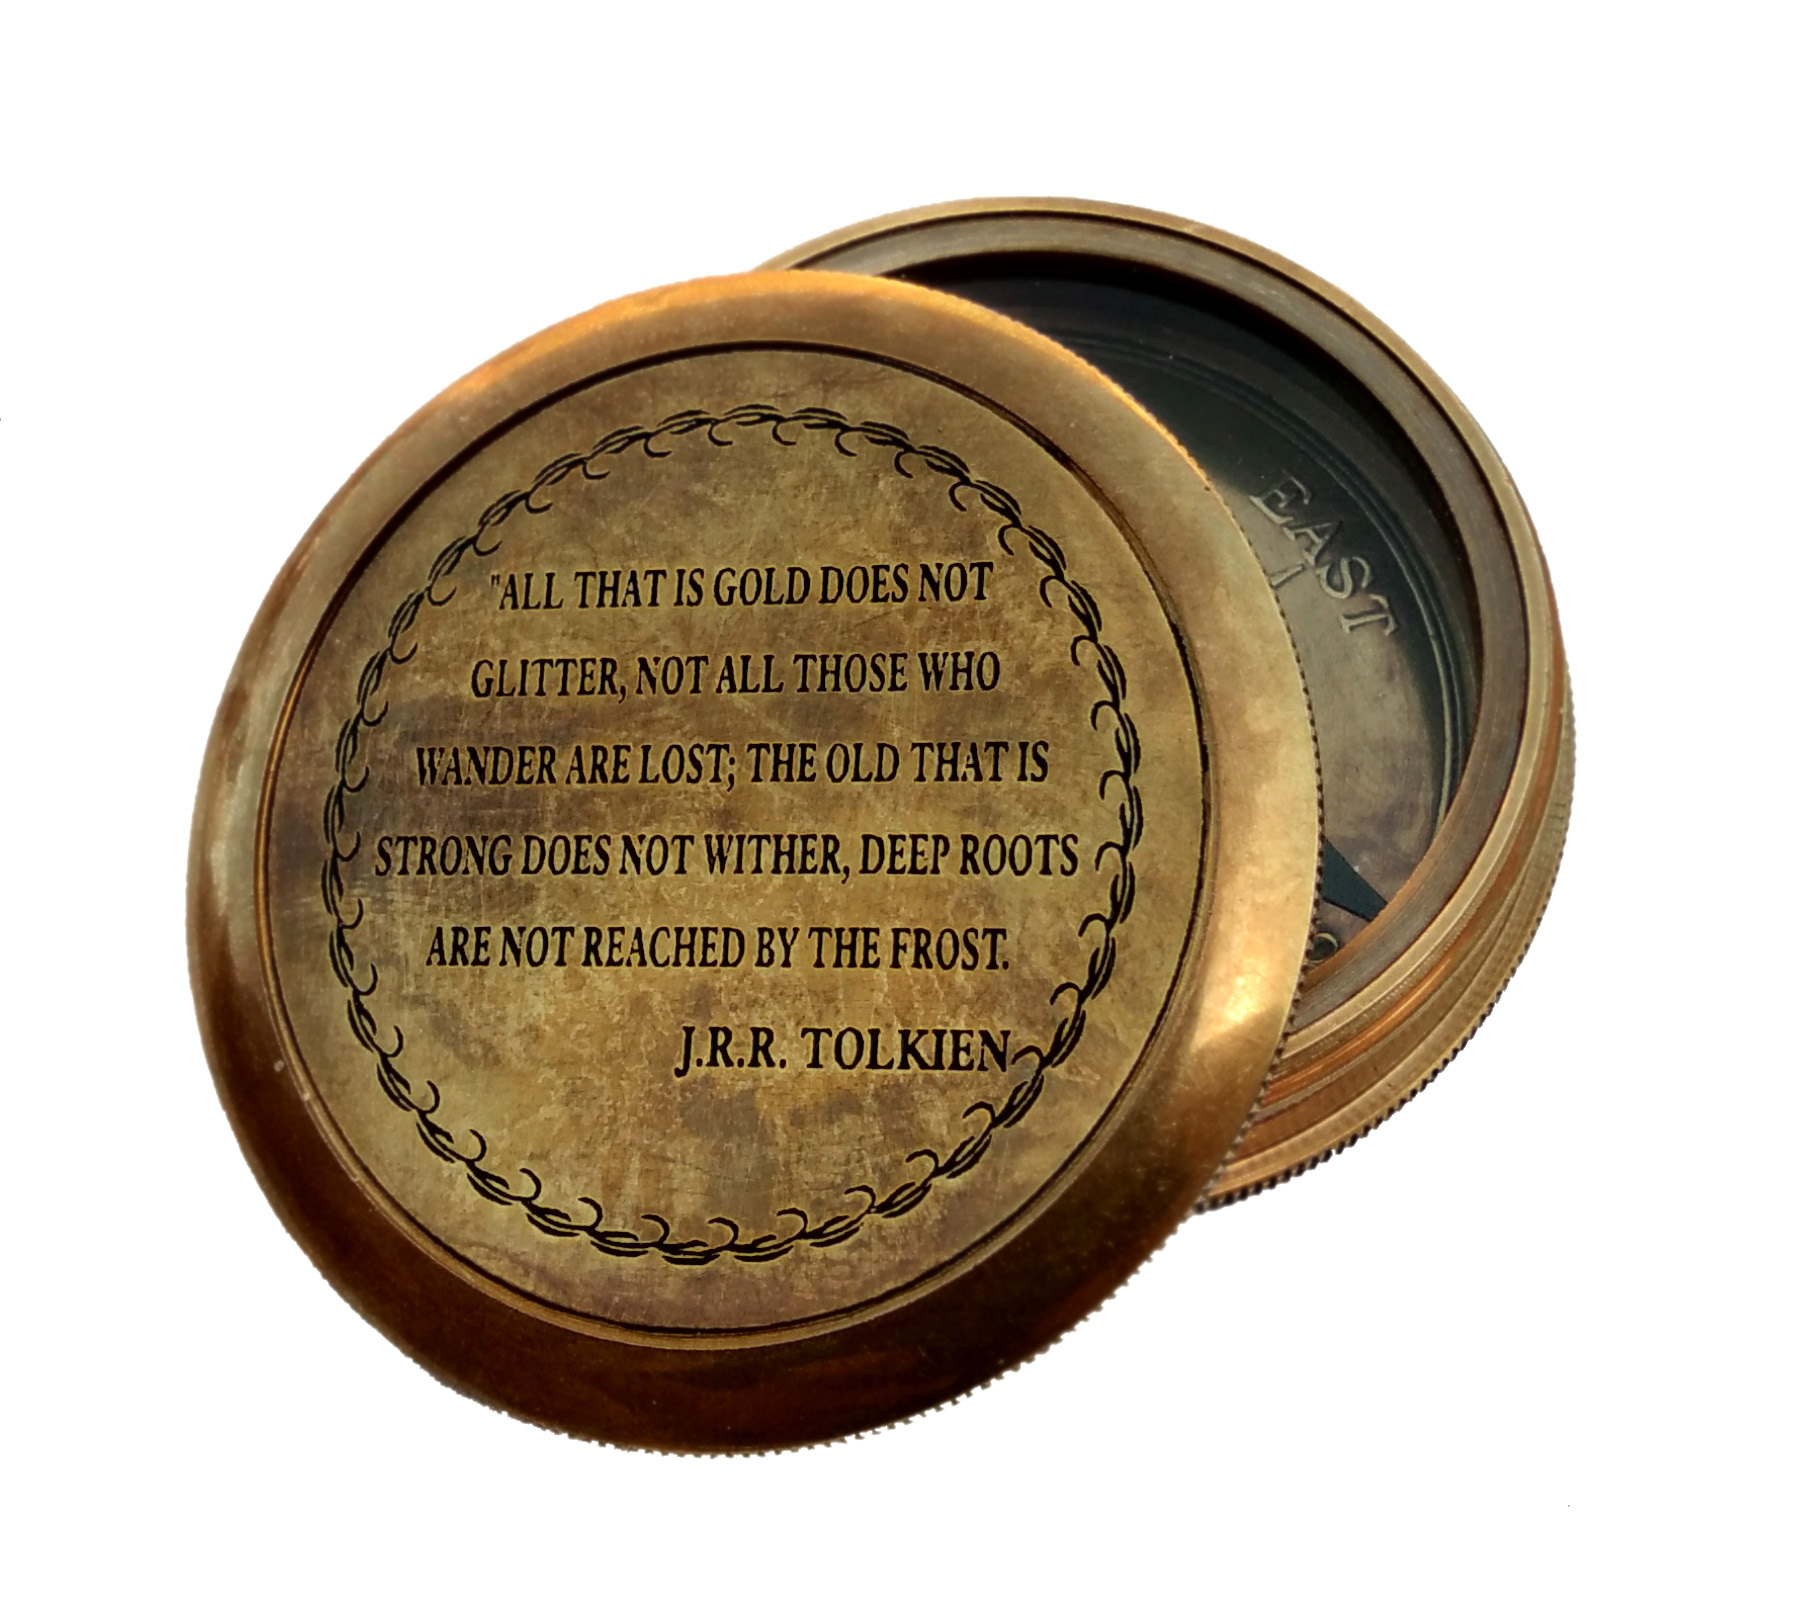 J.R.R. TOLKIEN compass